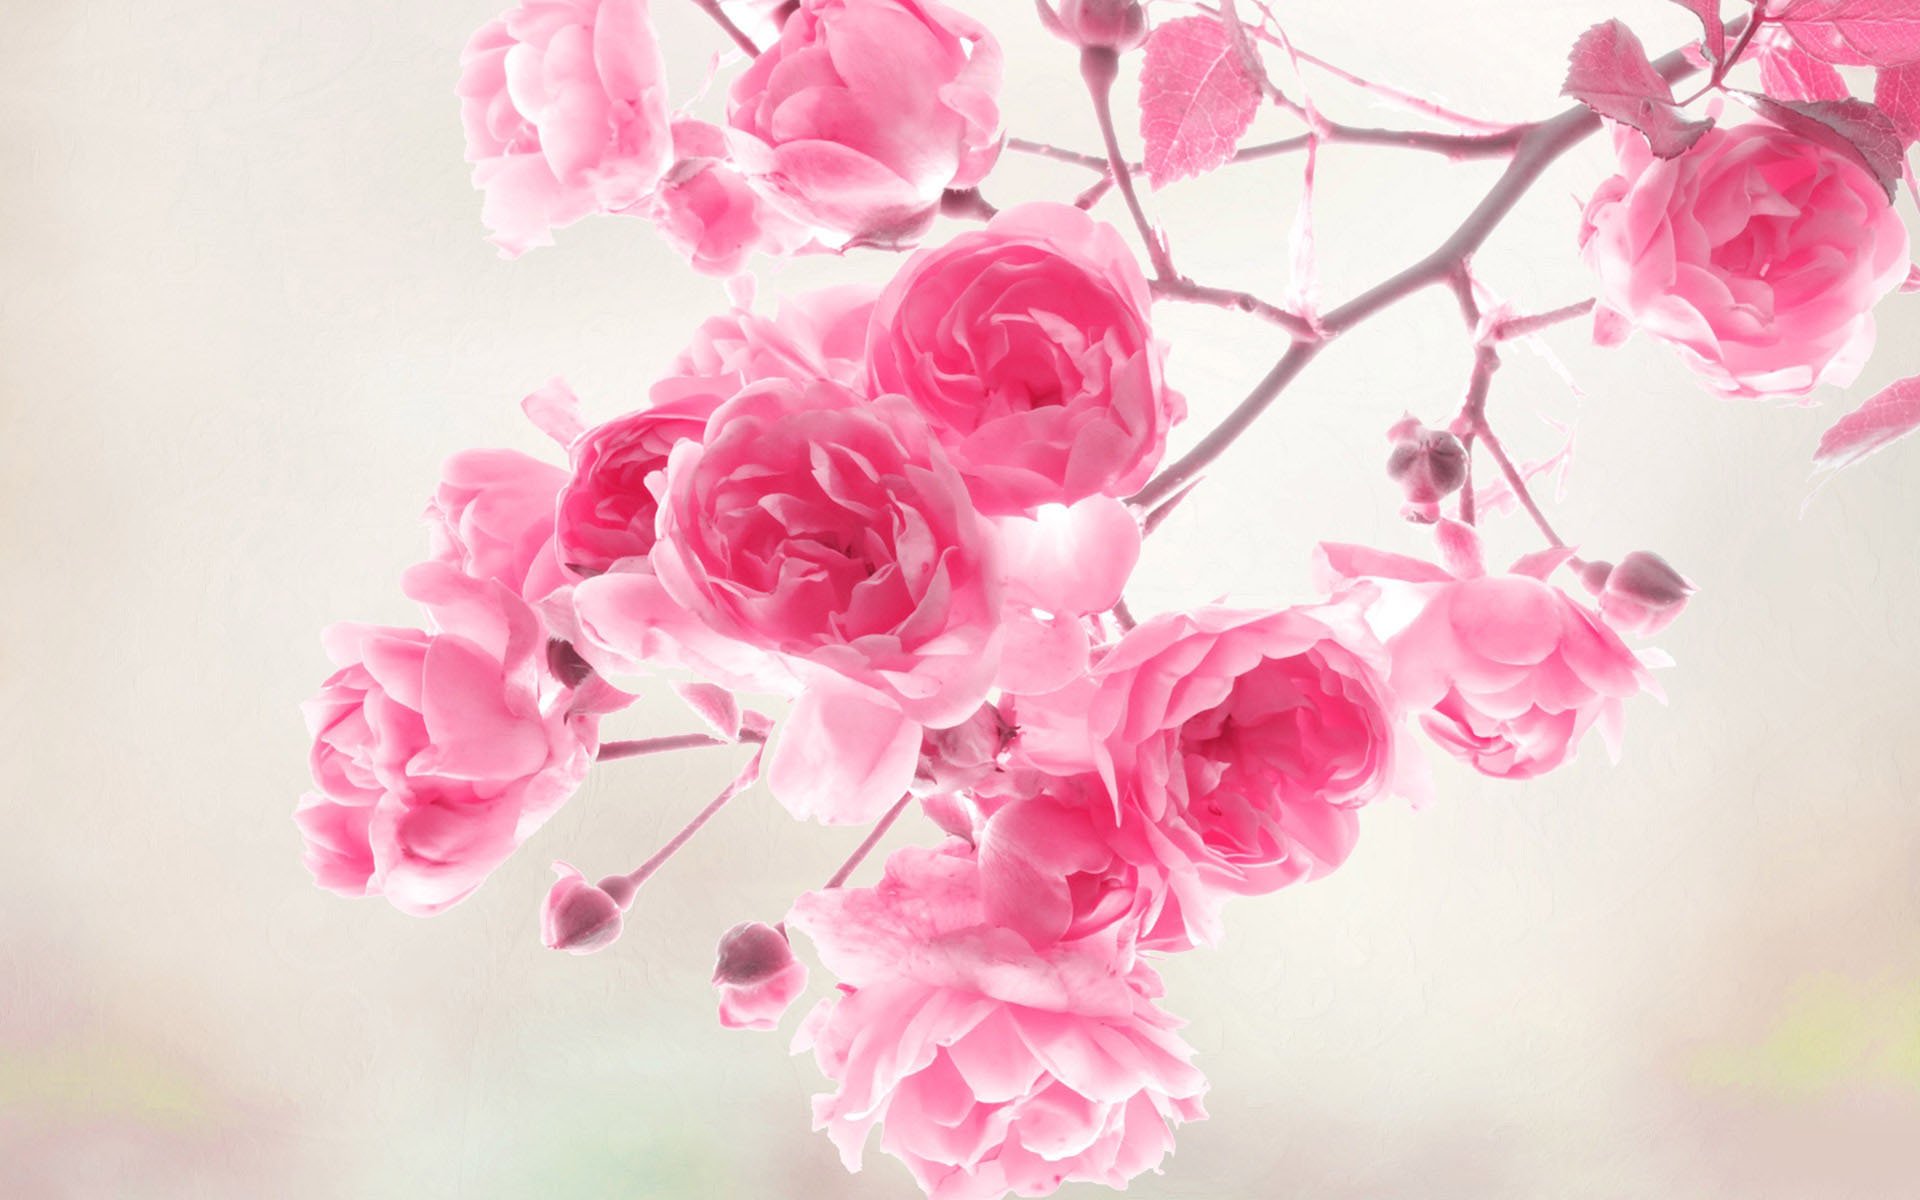 miglior hd wallpaper per cellulari al mondo,rosa,fiore,rose da giardino,petalo,rosa